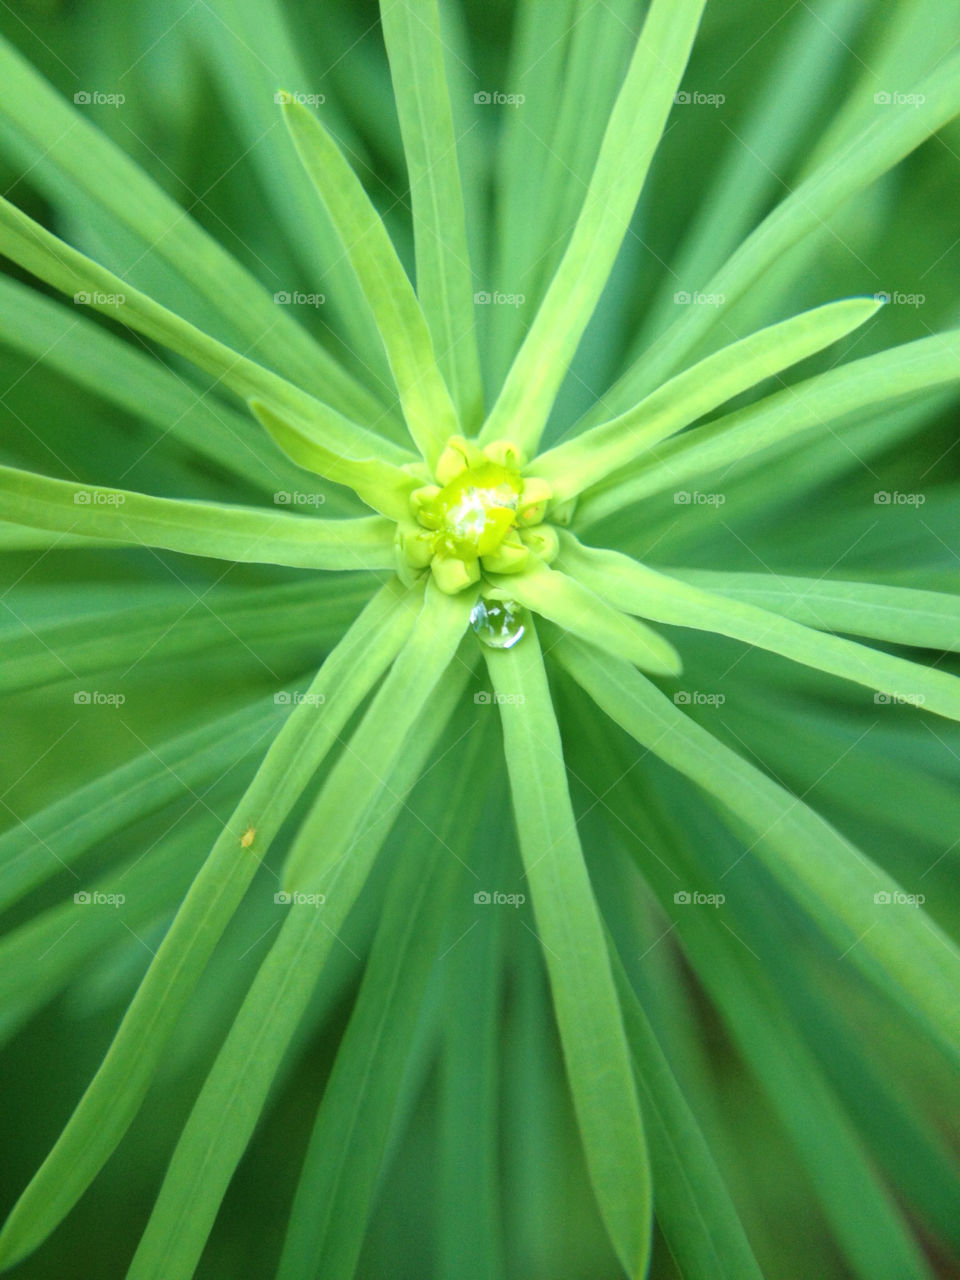 green garden nature closeup by cyrano